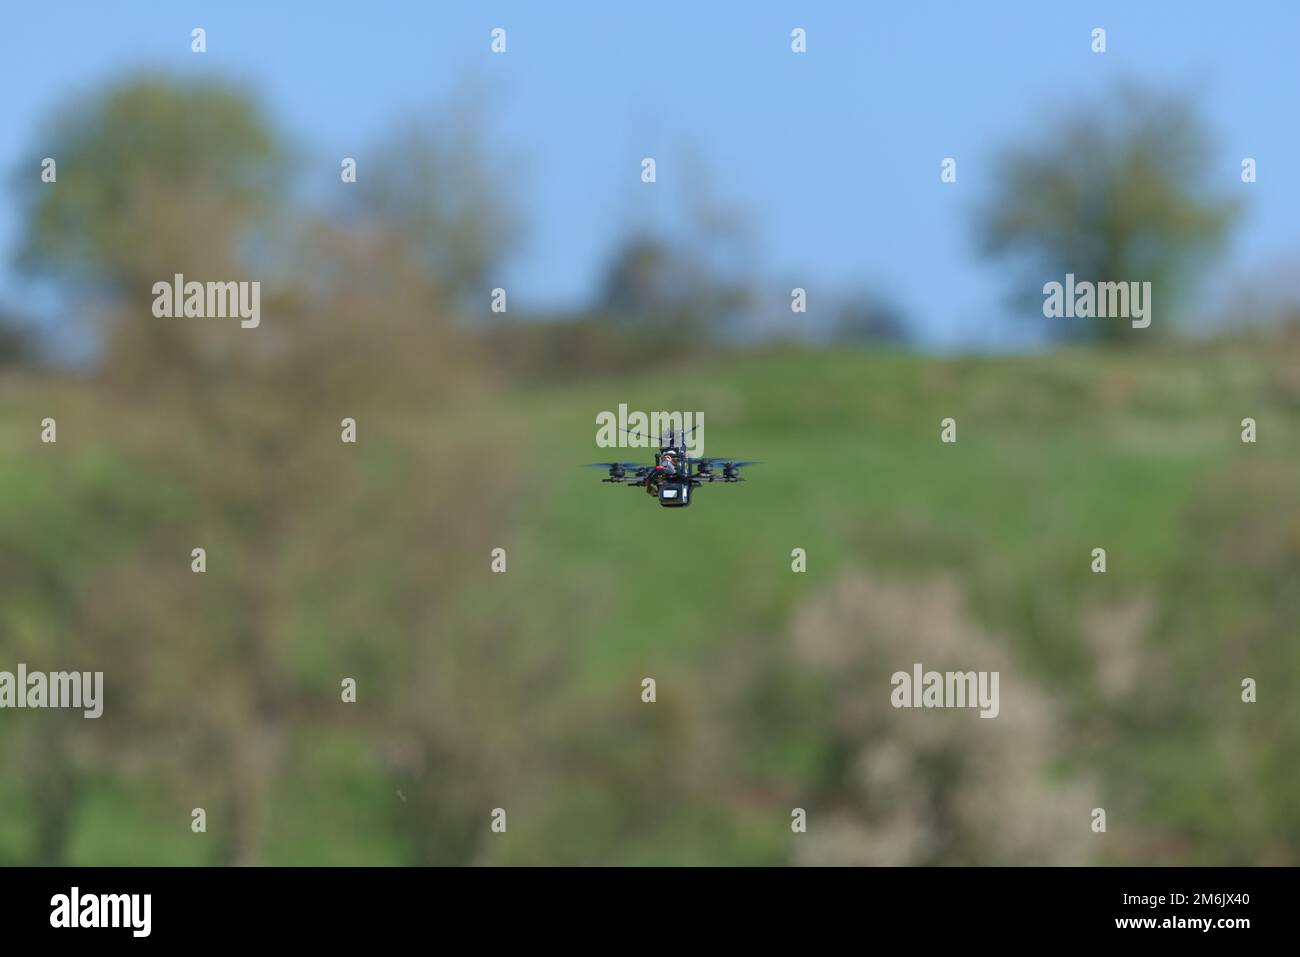 Le drone de classe de cure-dents très petit et minuscule vole loin de l'appareil photo, dans un cadre rural, vers un horizon bordé d'arbres et un ciel bleu. Banque D'Images